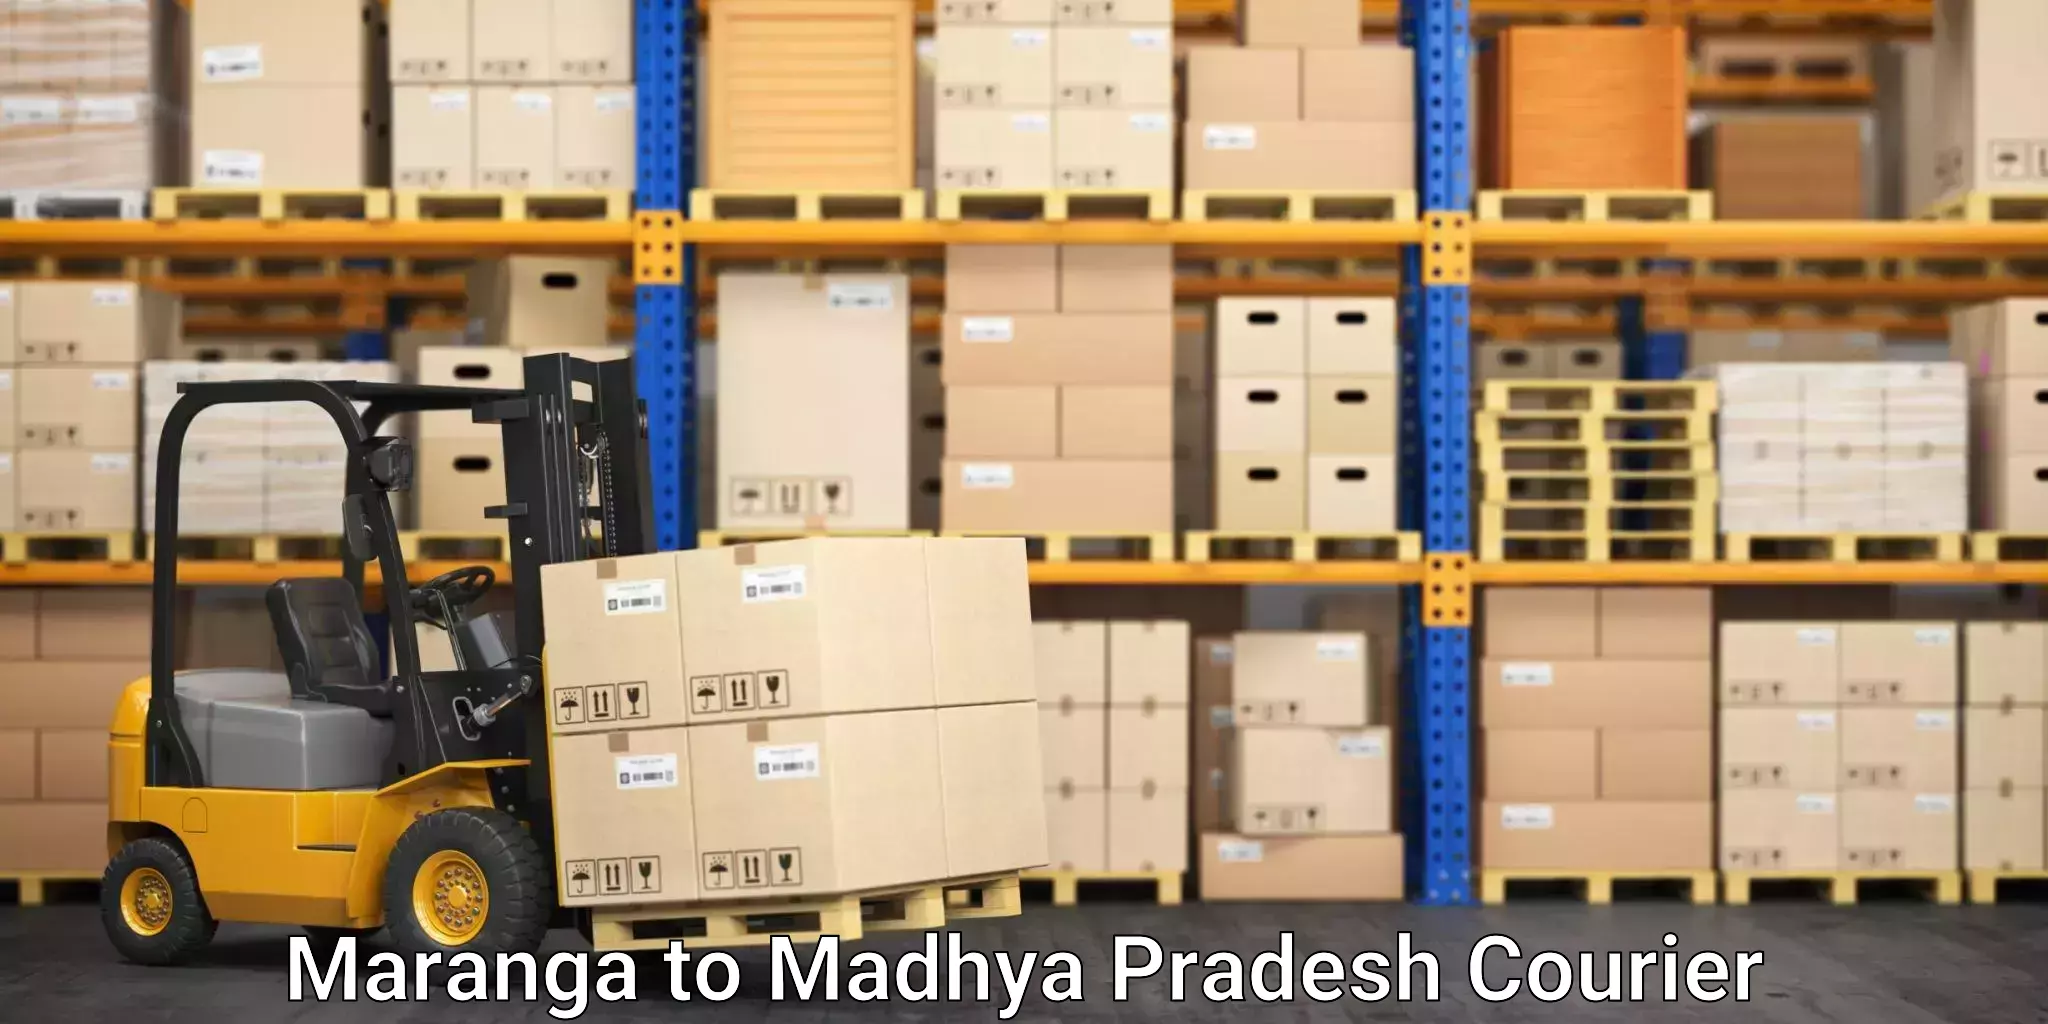 Furniture moving service Maranga to Madhya Pradesh